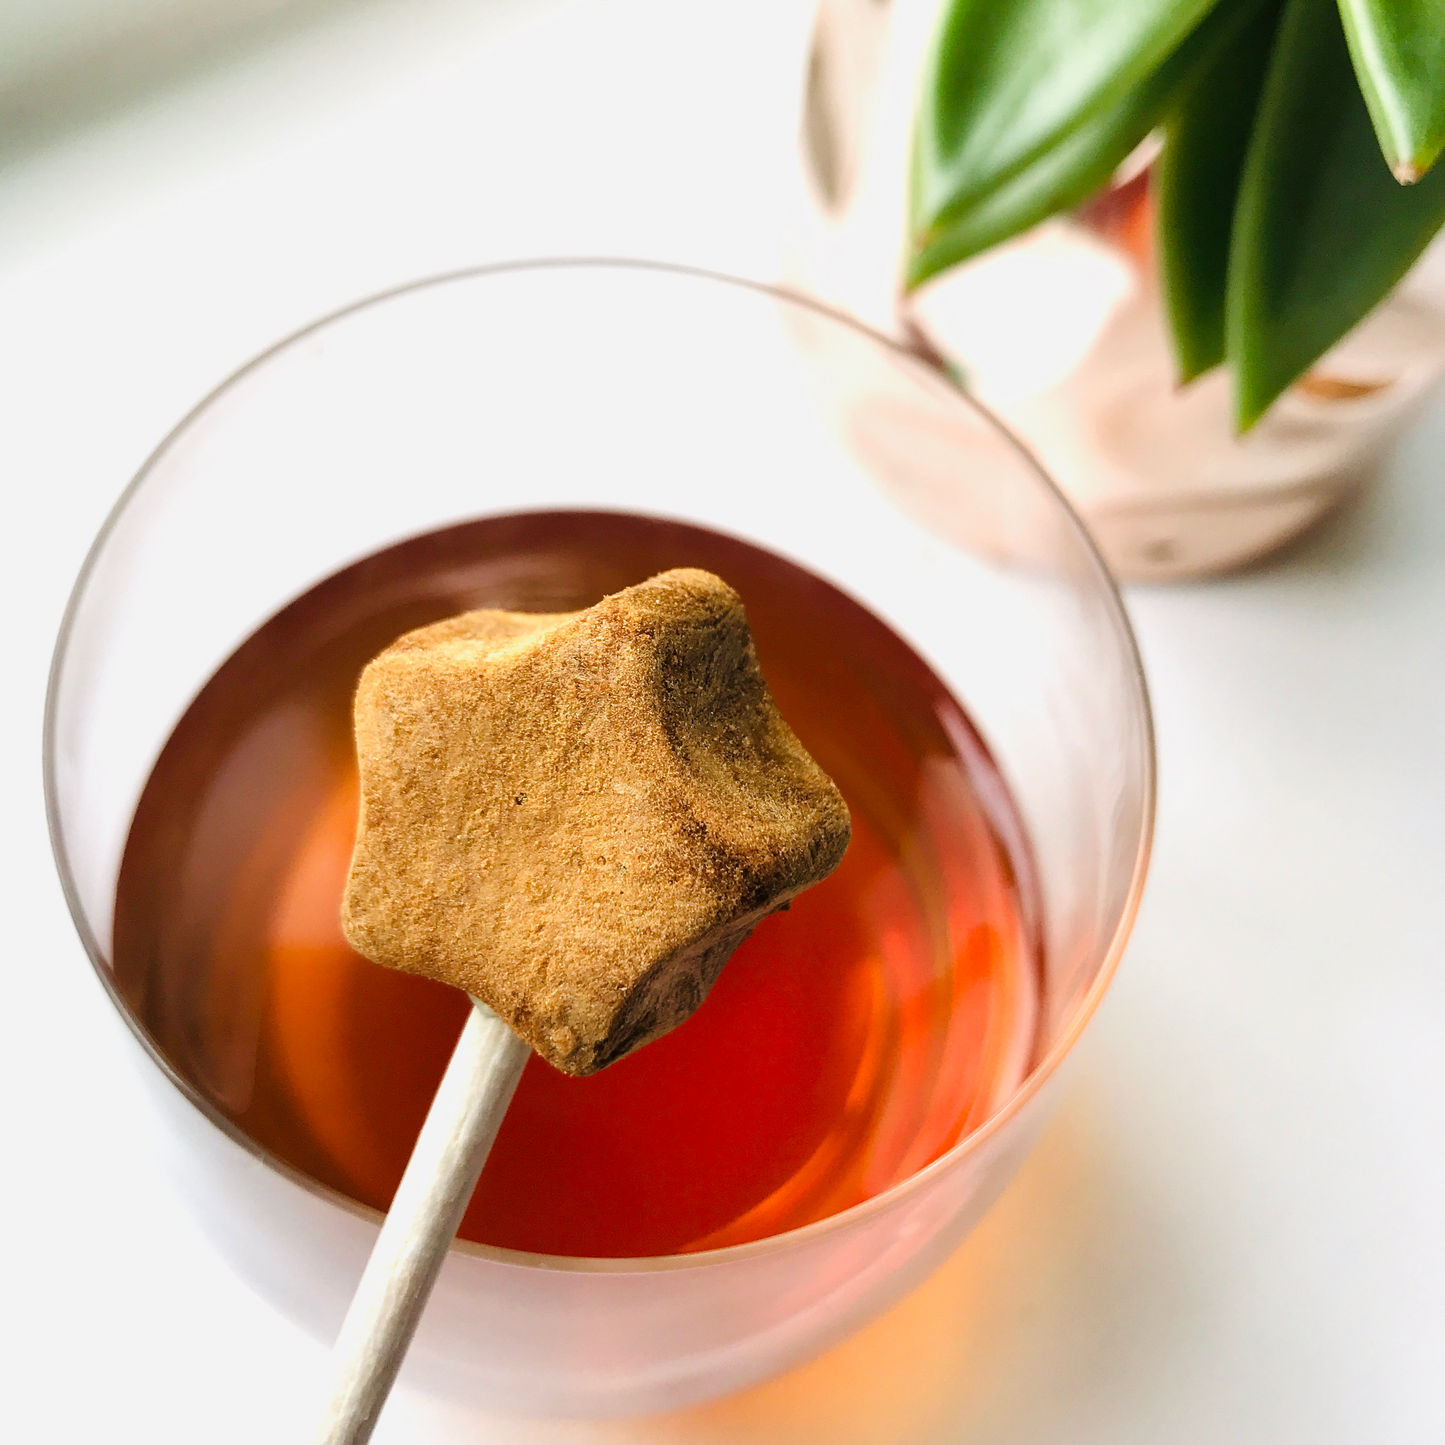 Tea-Pop Sampler Box, Spaßige Art, köstlichen Gourmet-Tee am Stiel zu genießen, 10 Mischungen zum Probieren